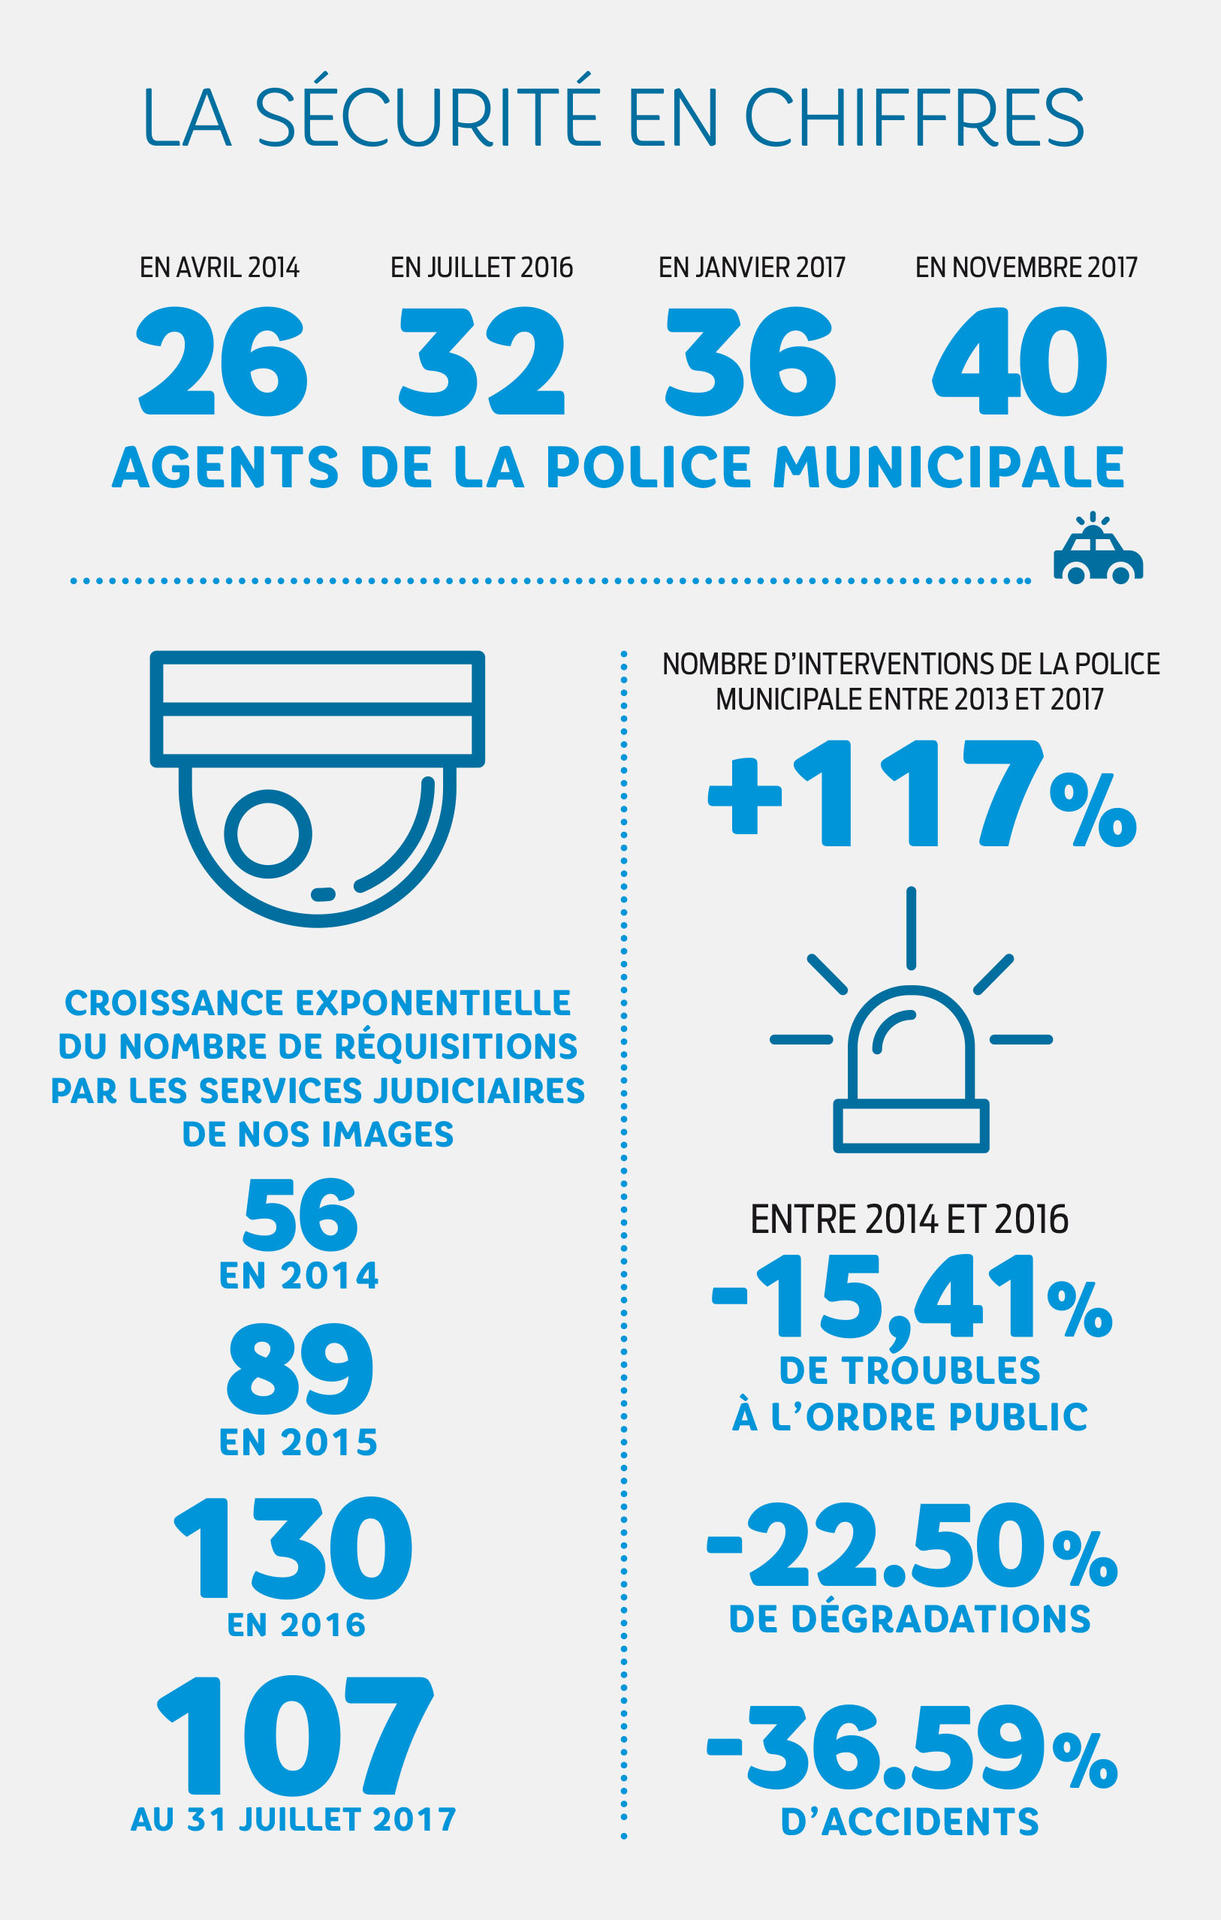 La sécurité à Chambéry 2014 - 2017